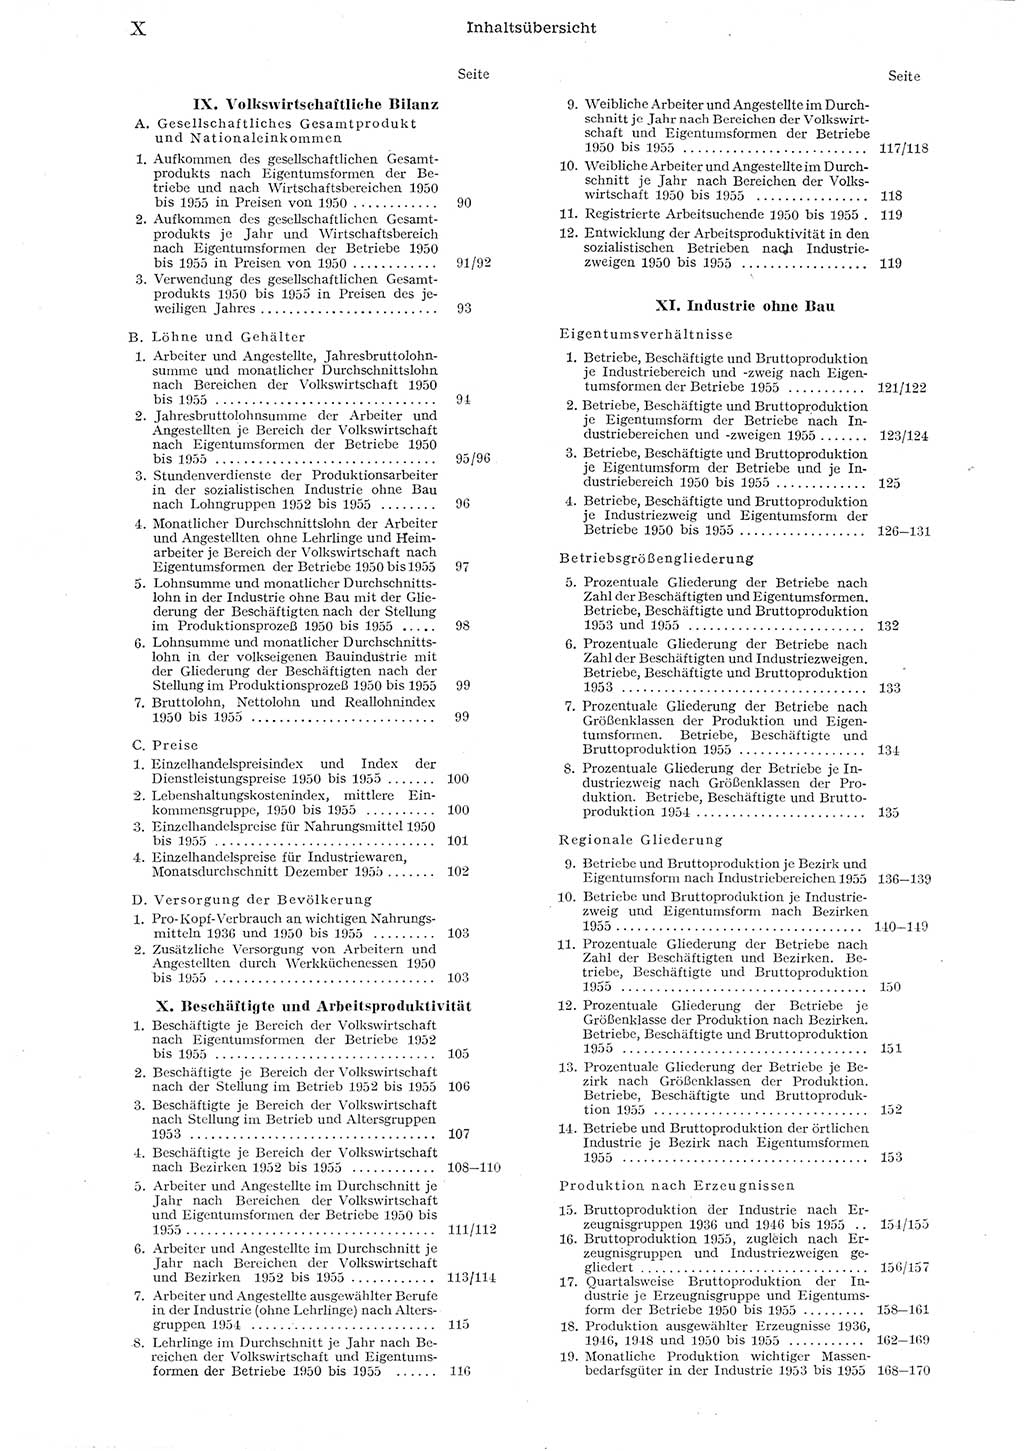 Statistisches Jahrbuch der Deutschen Demokratischen Republik (DDR) 1955, Seite 10 (Stat. Jb. DDR 1955, S. 10)